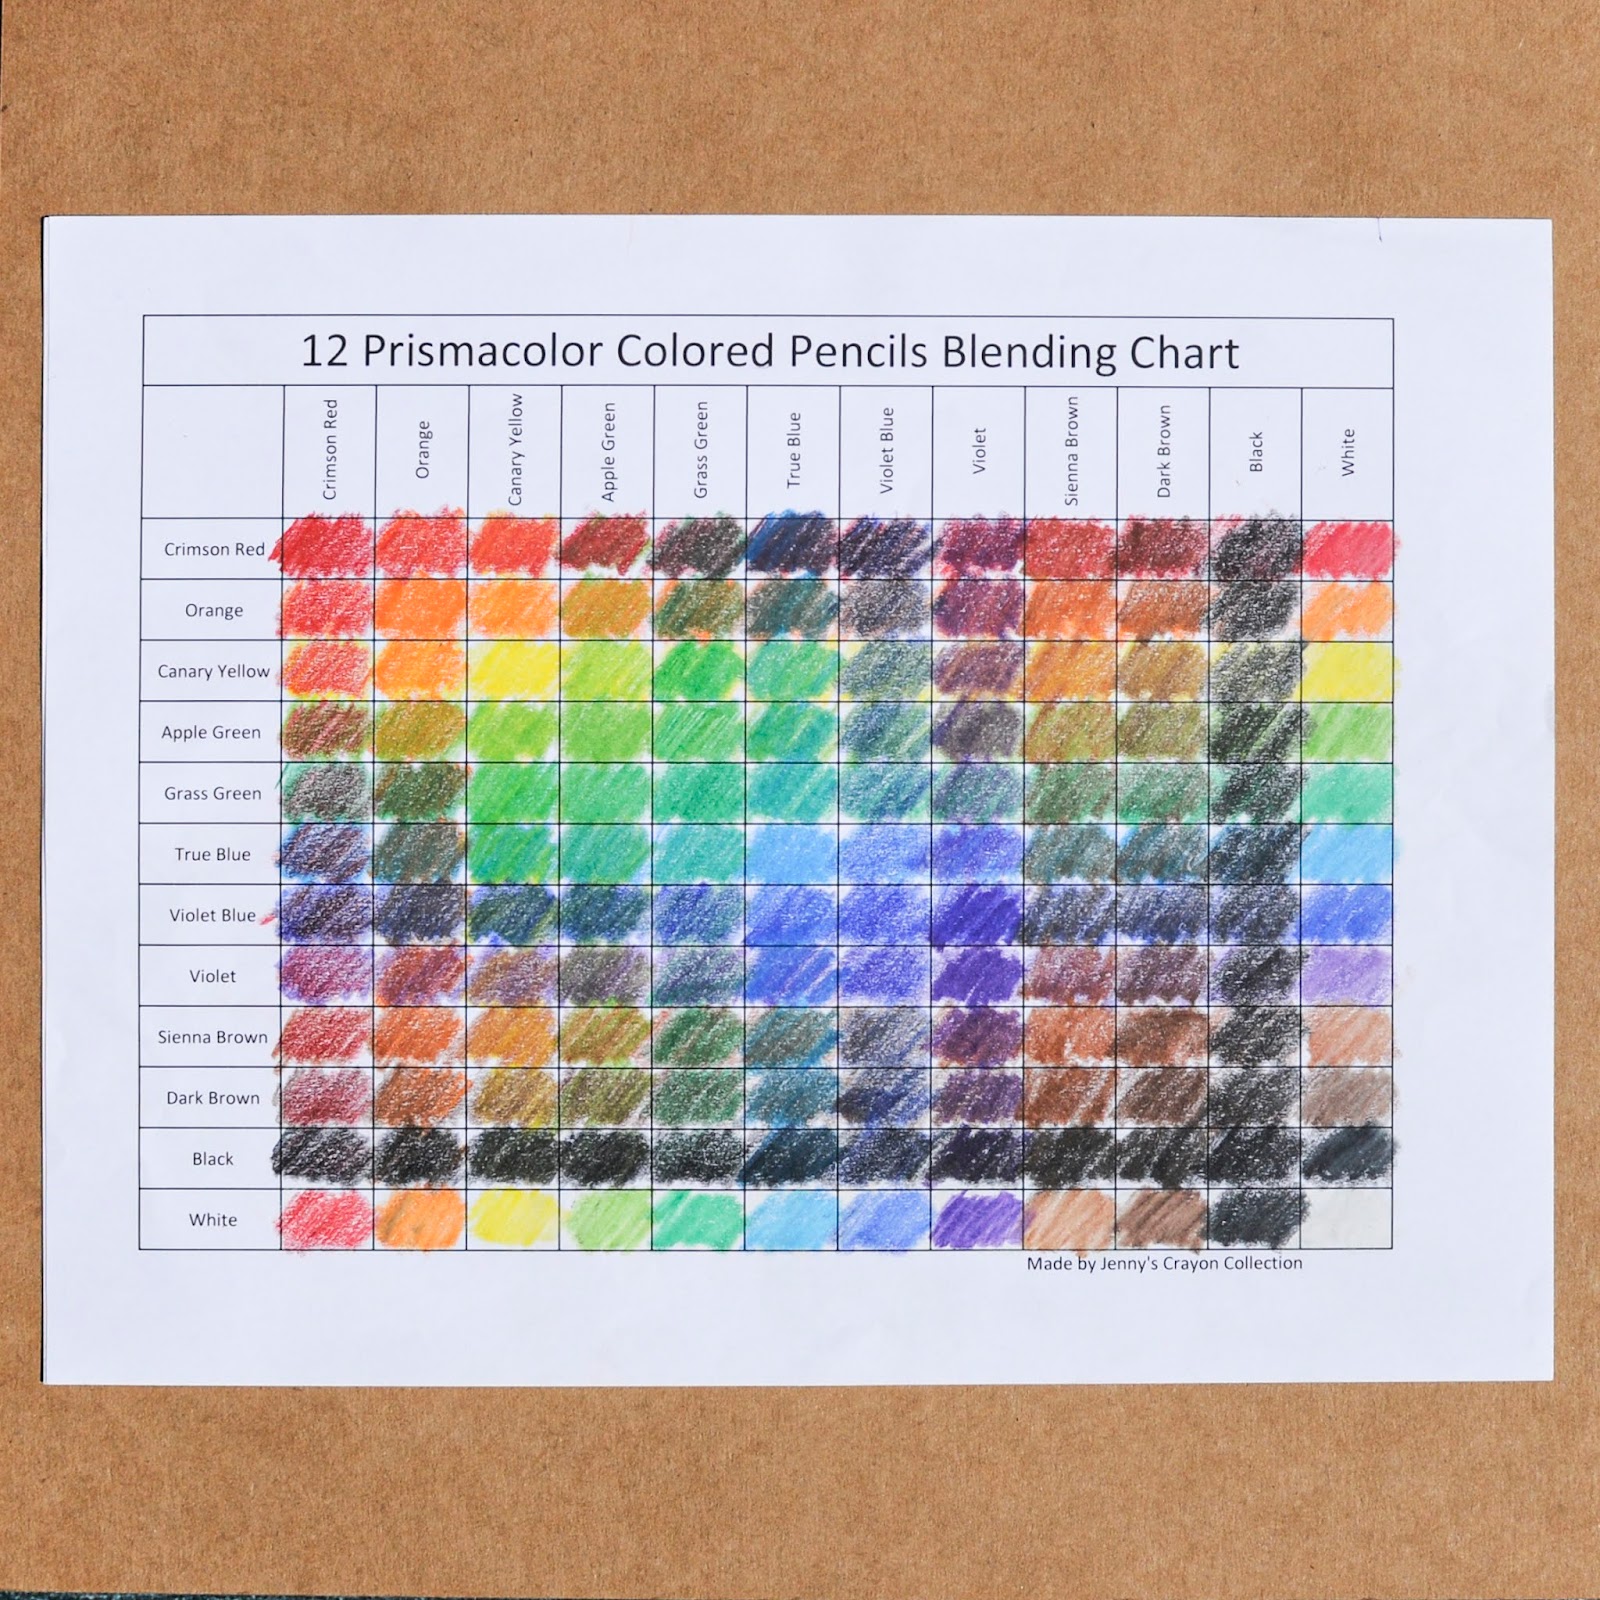 150 Count Prismacolor Premier Colored Pencils 